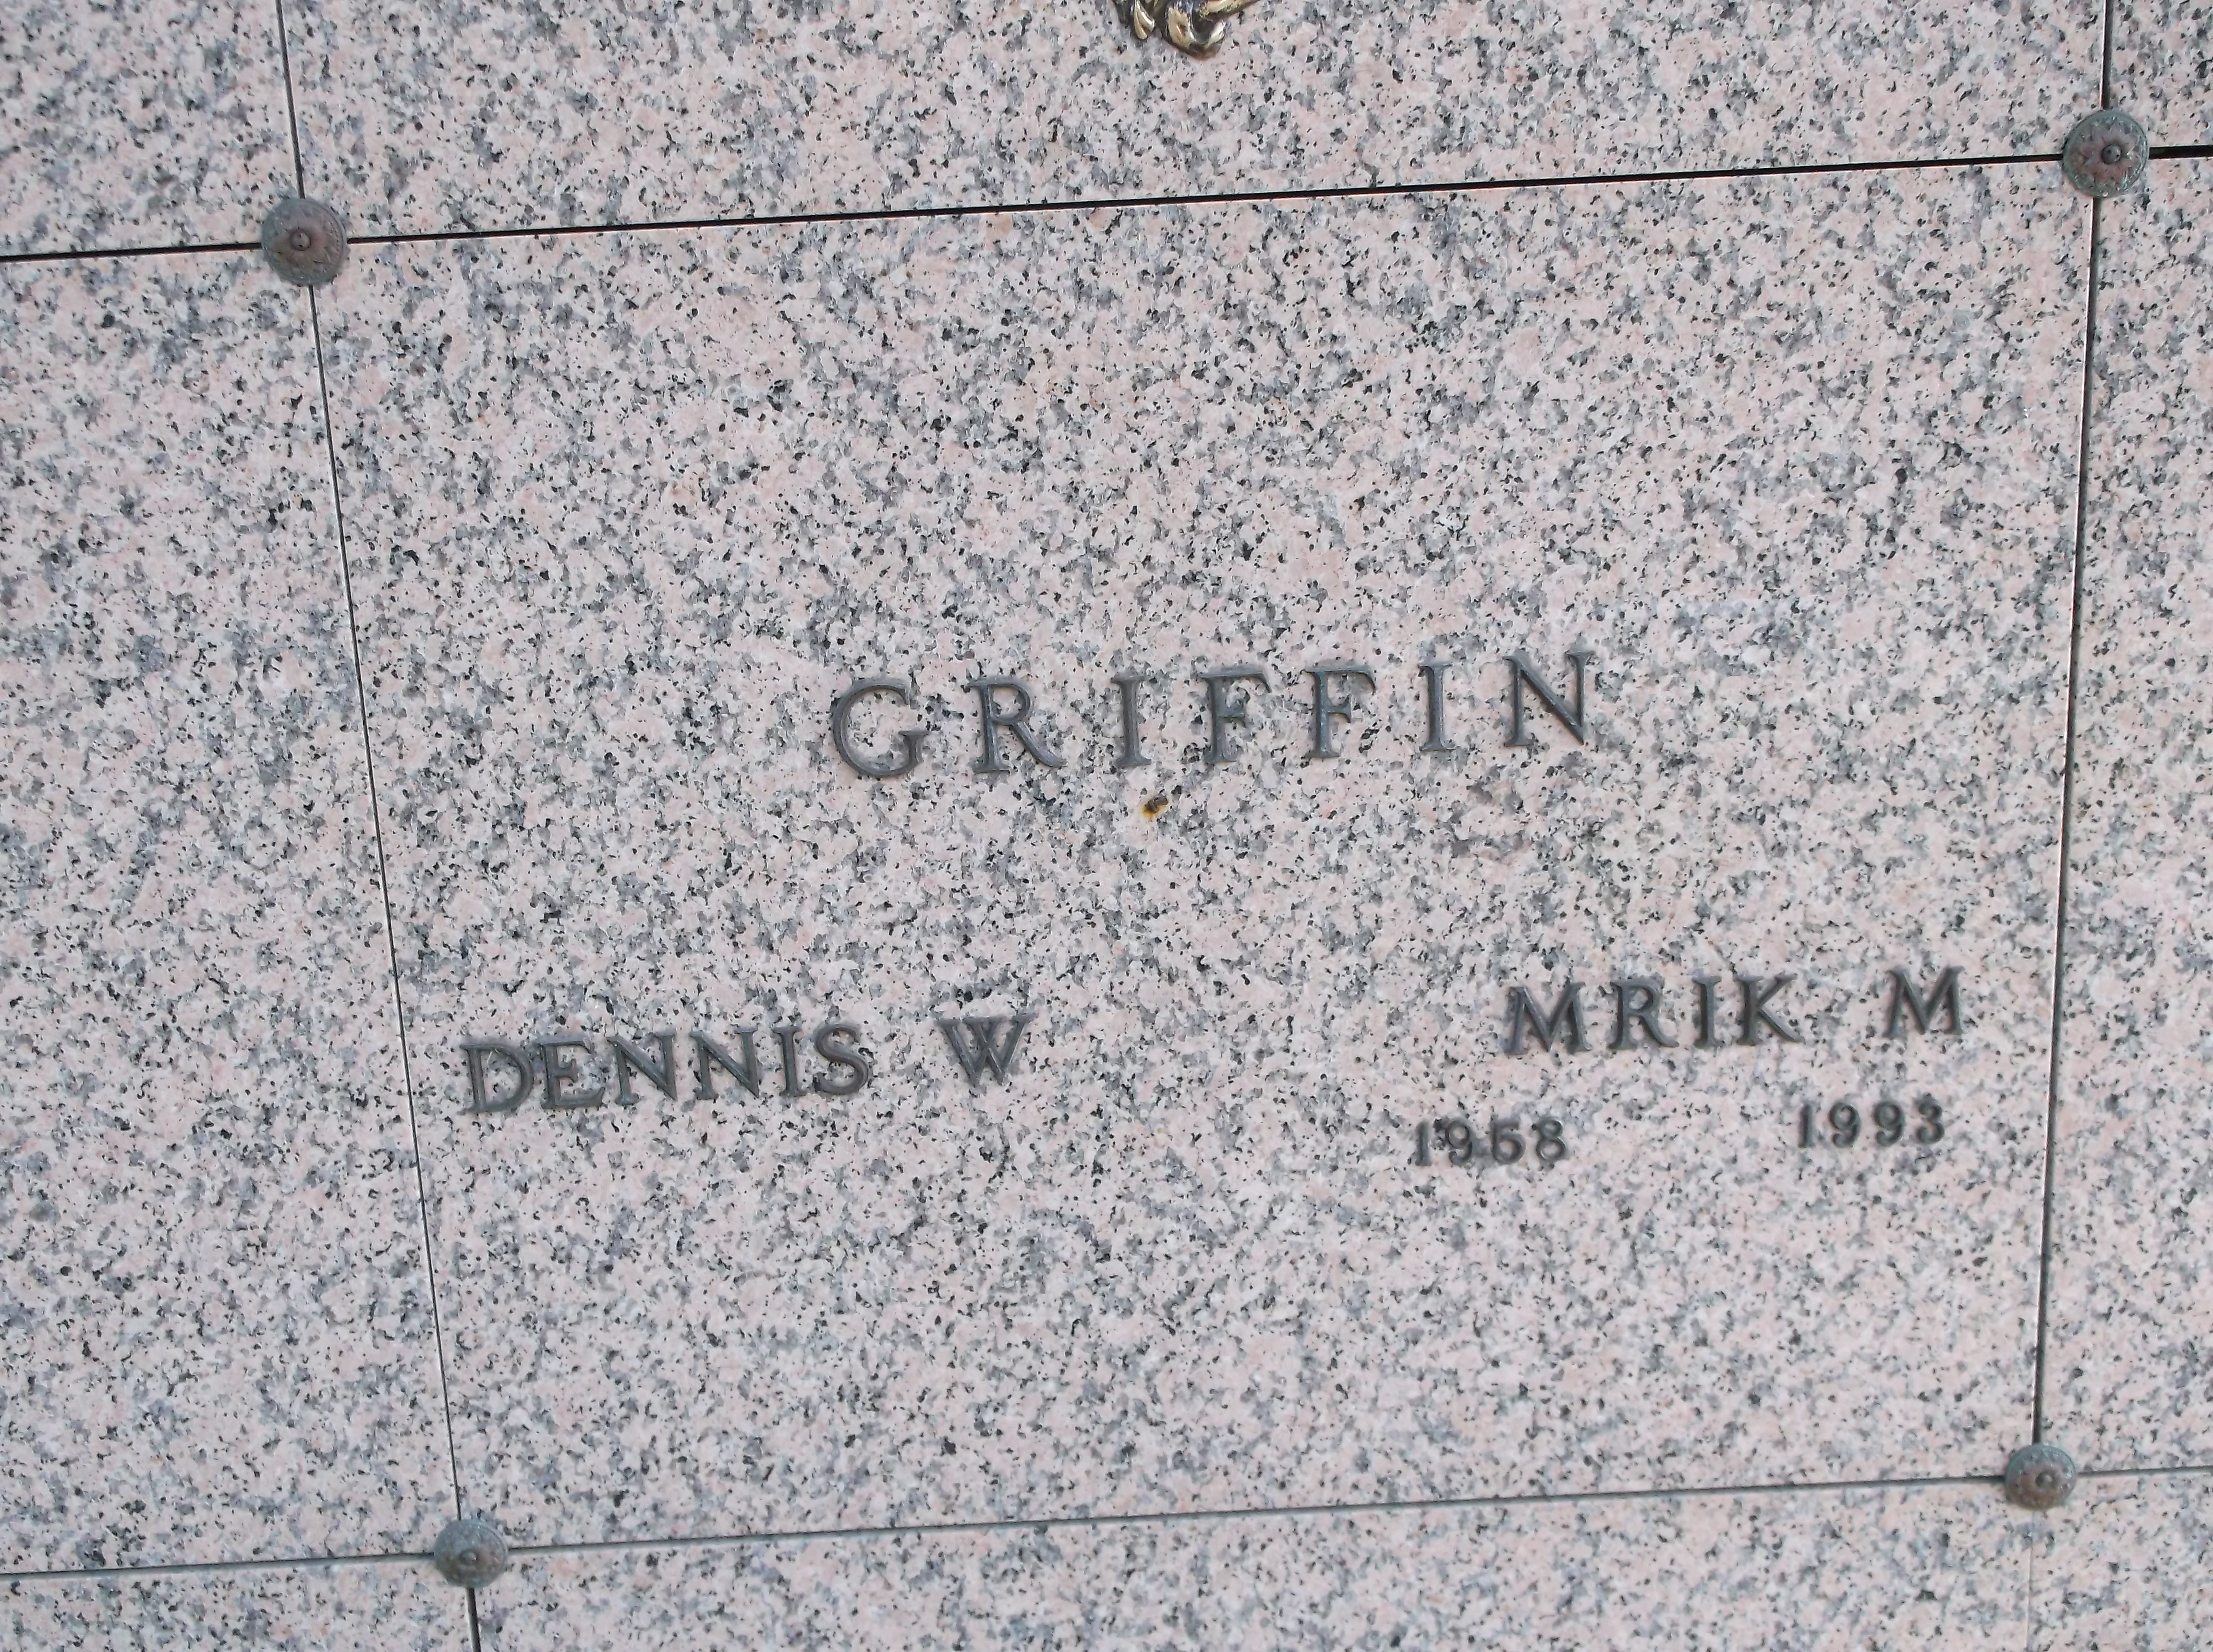 Mrik M Griffin